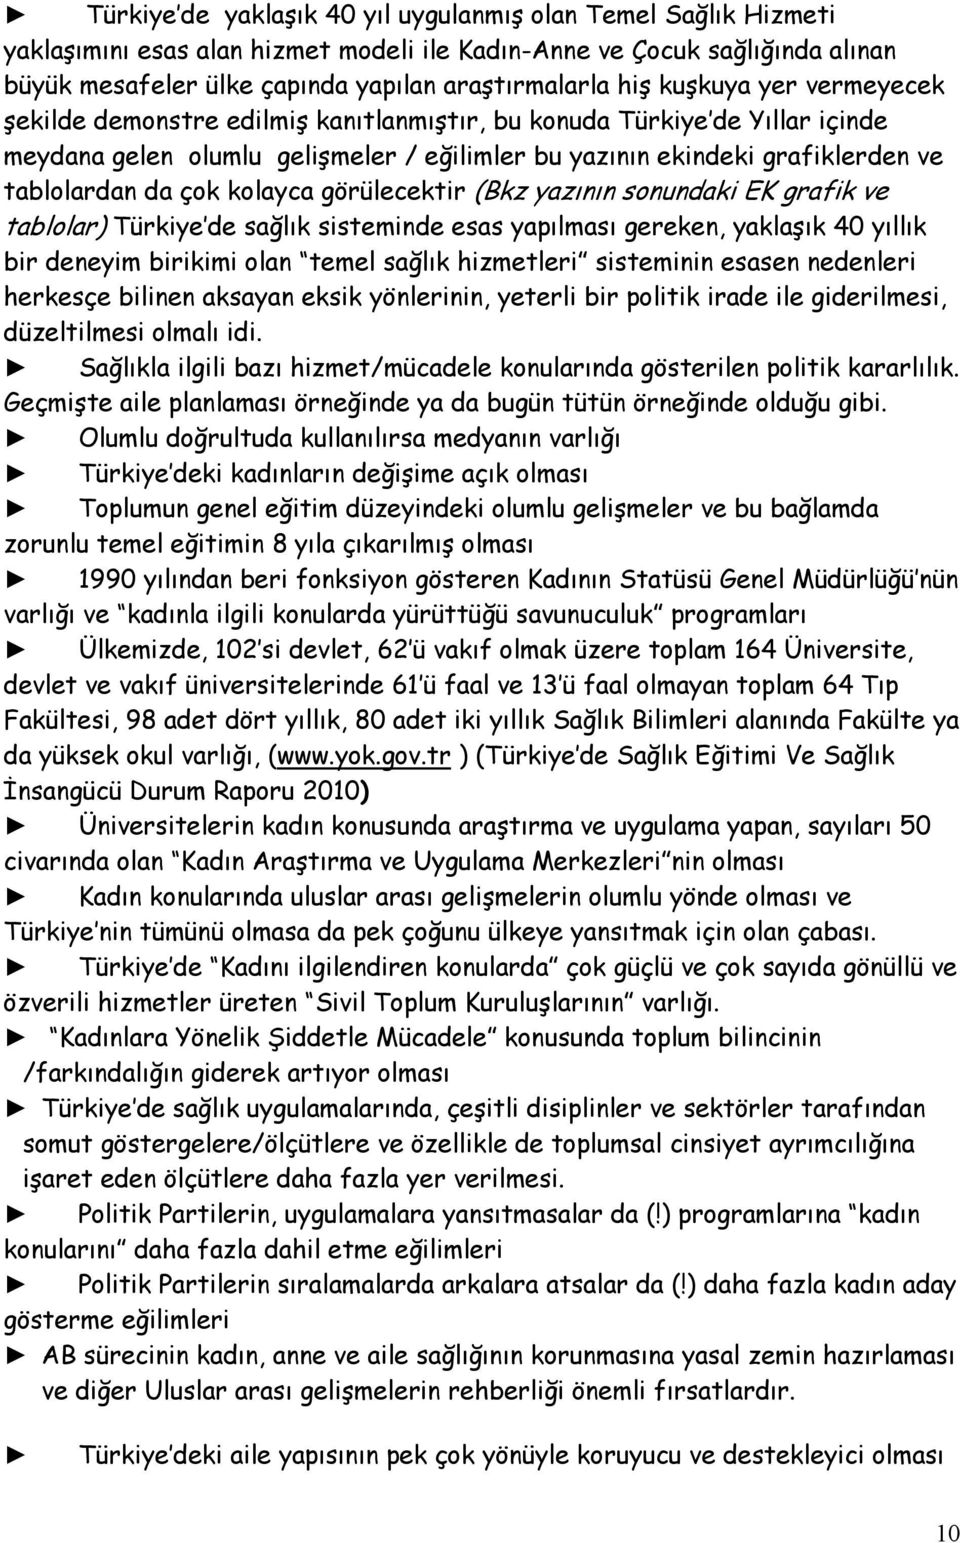 kolayca görülecektir (Bkz yazının sonundaki EK grafik ve tablolar) Türkiye de sağlık sisteminde esas yapılması gereken, yaklaşık 40 yıllık bir deneyim birikimi olan temel sağlık hizmetleri sisteminin